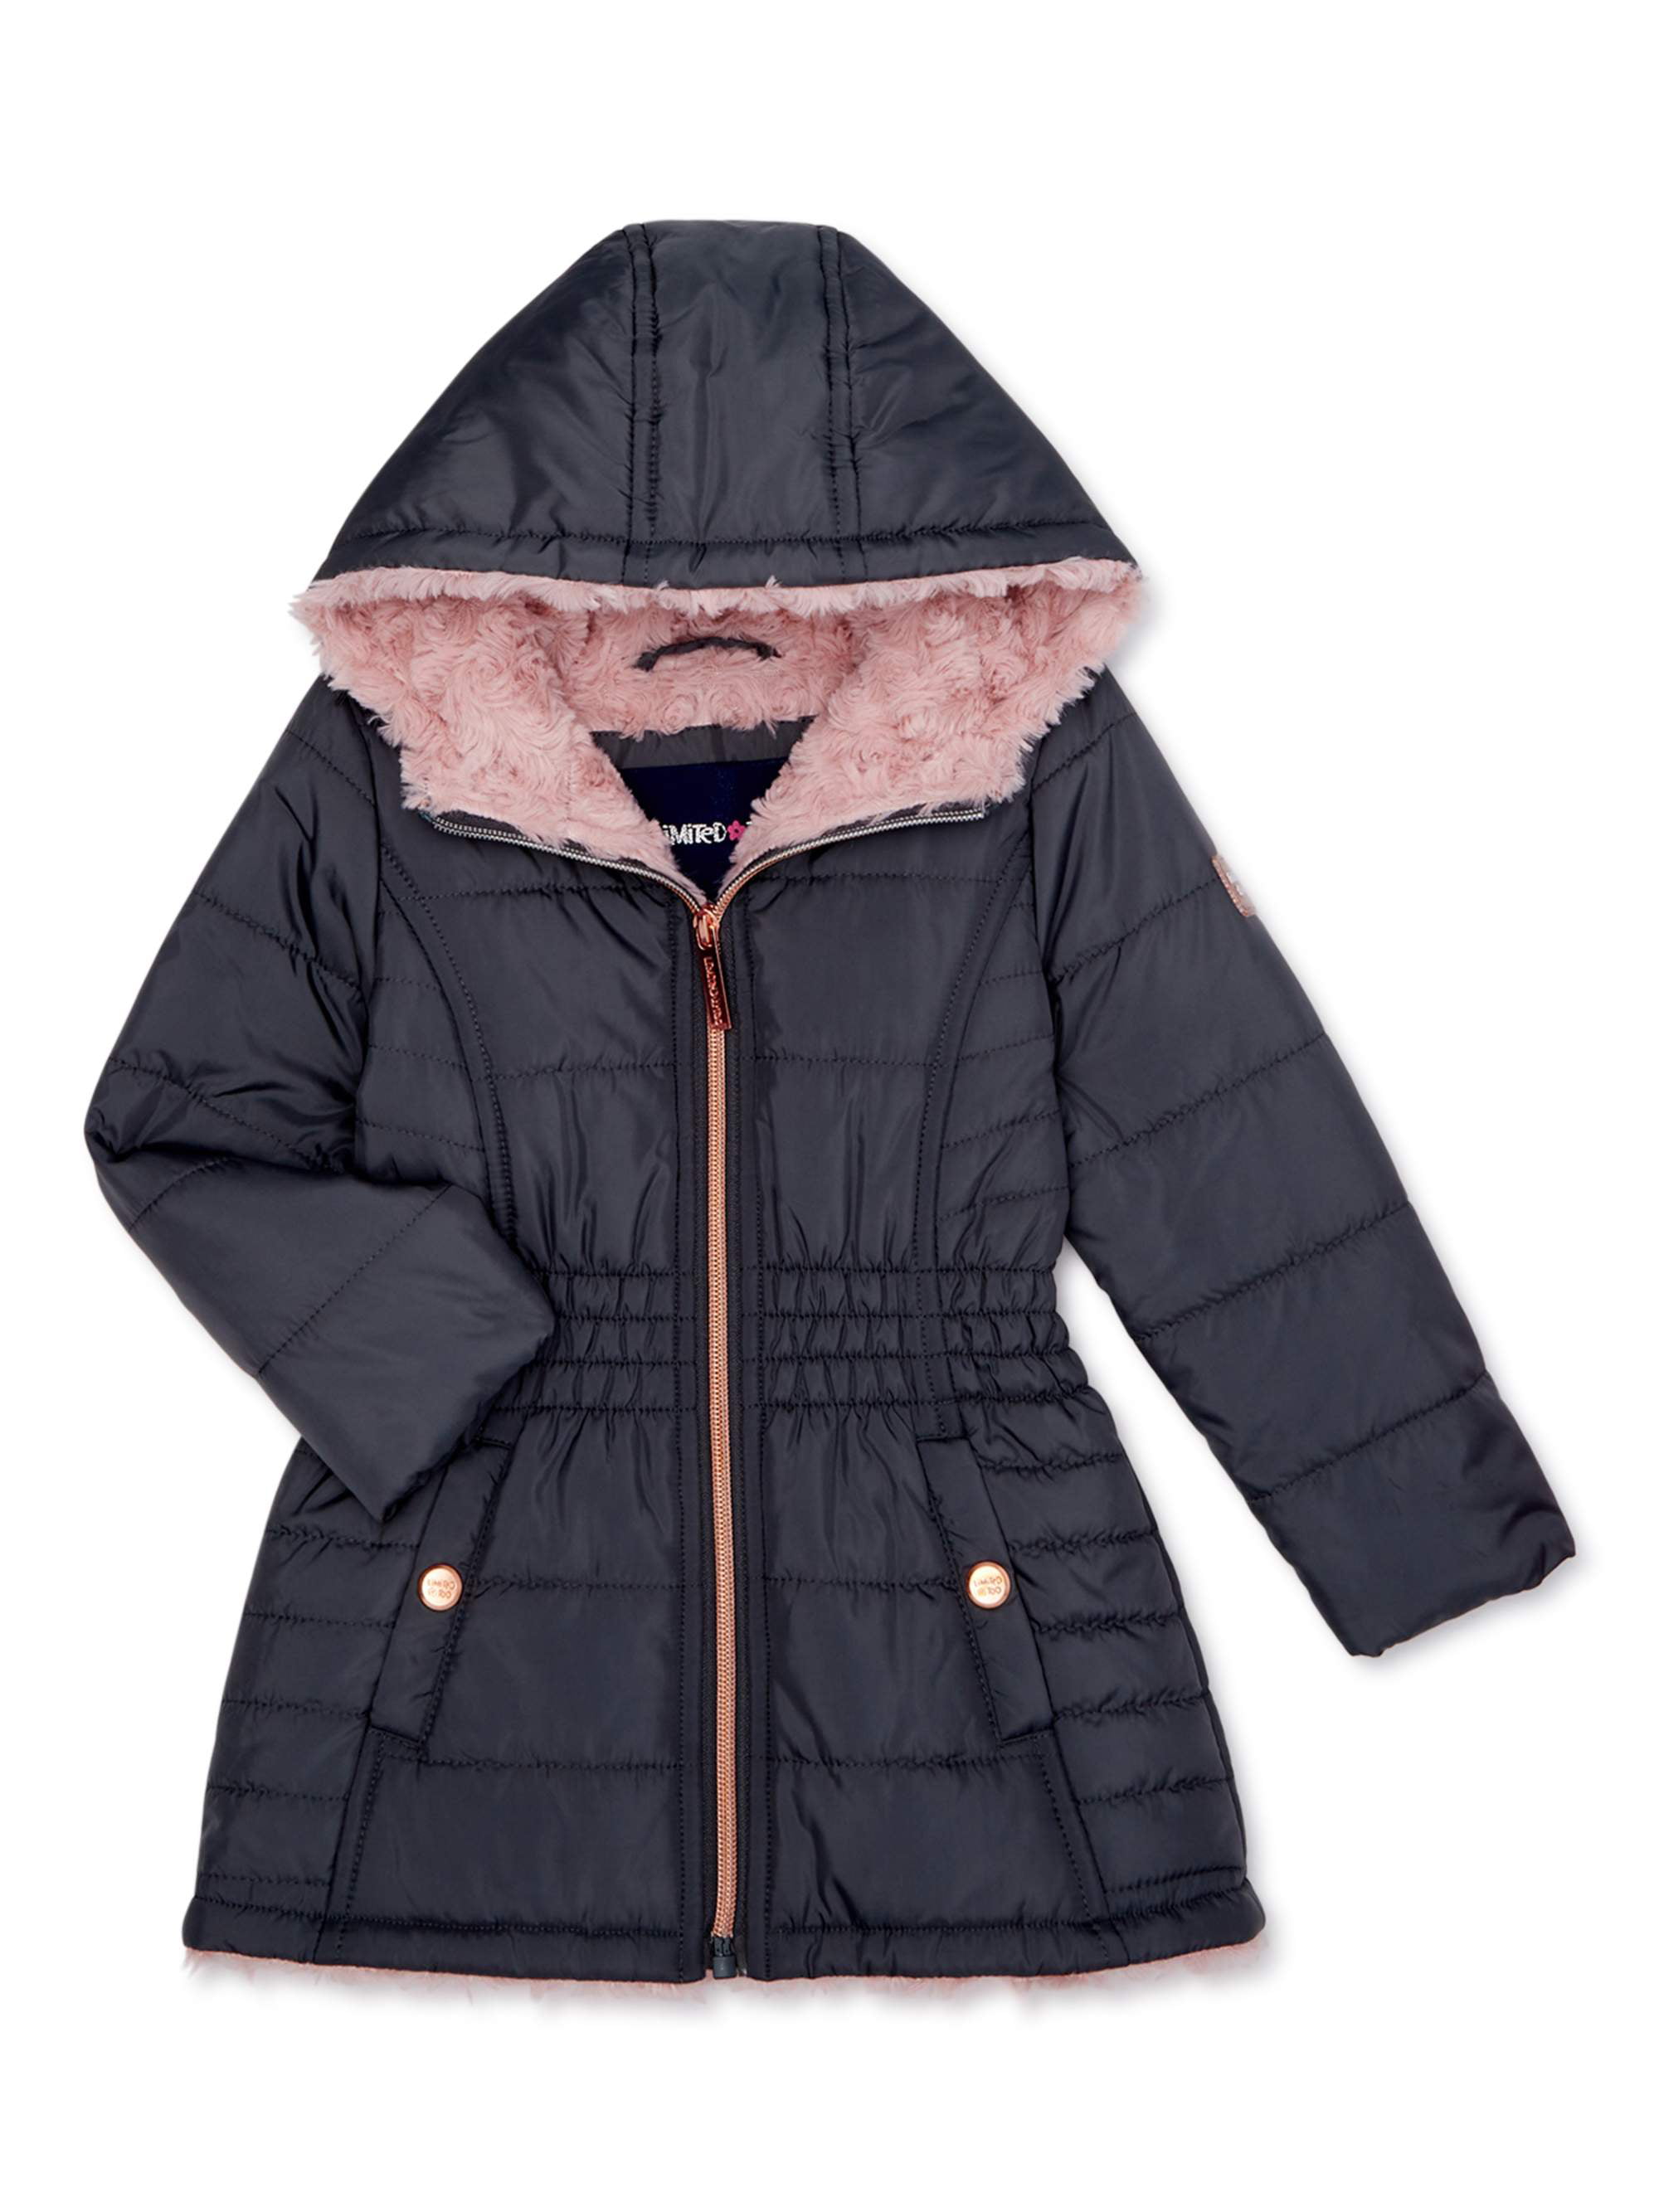 Walmart Winter Coats For Girls | officesteps.com